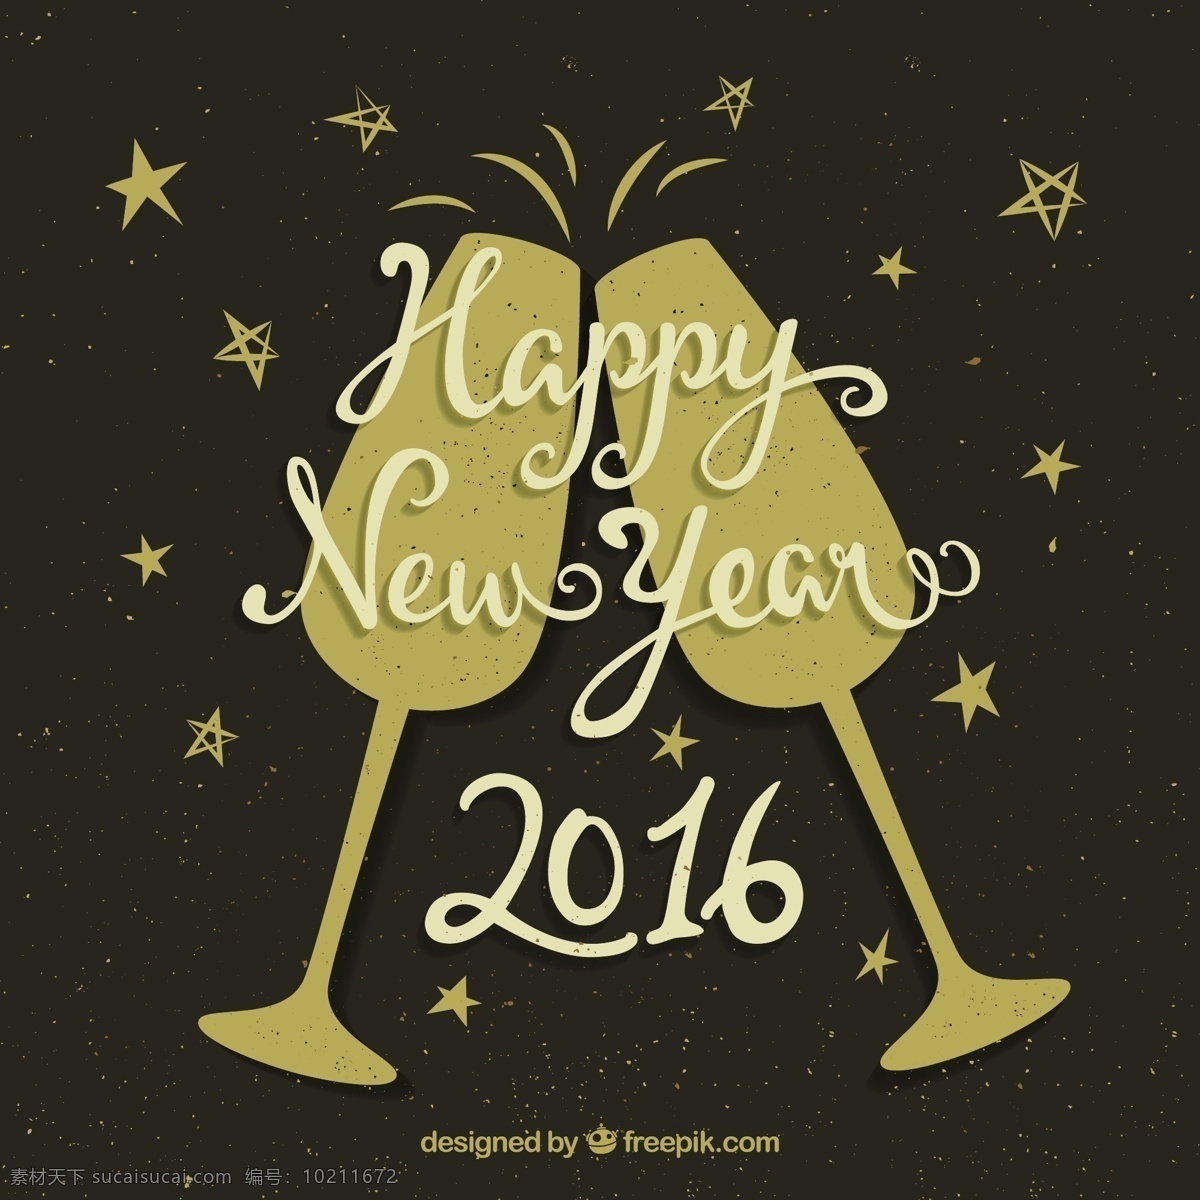 复古 新年 派对 背景 快乐 新的一年 冬季 眼镜 庆祝 玻璃 新建 香槟 事件 假日 2016年 新年快乐 节日